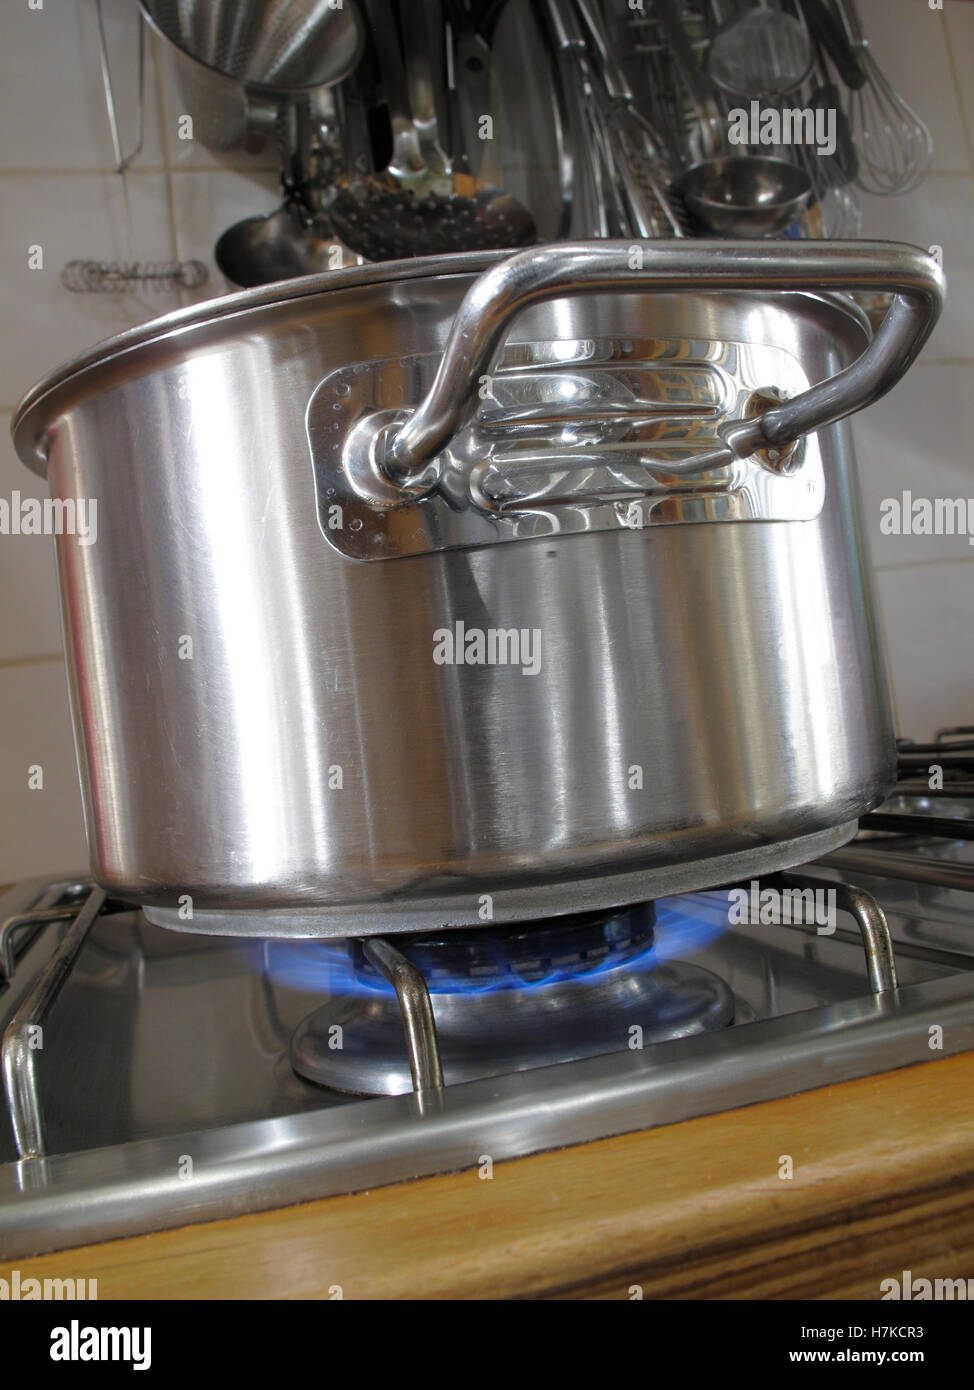 https://c8.alamy.com/compes/h7kcr3/cocinar-con-gas-gas-natural-en-una-estufa-de-gas-pot-h7kcr3.jpg